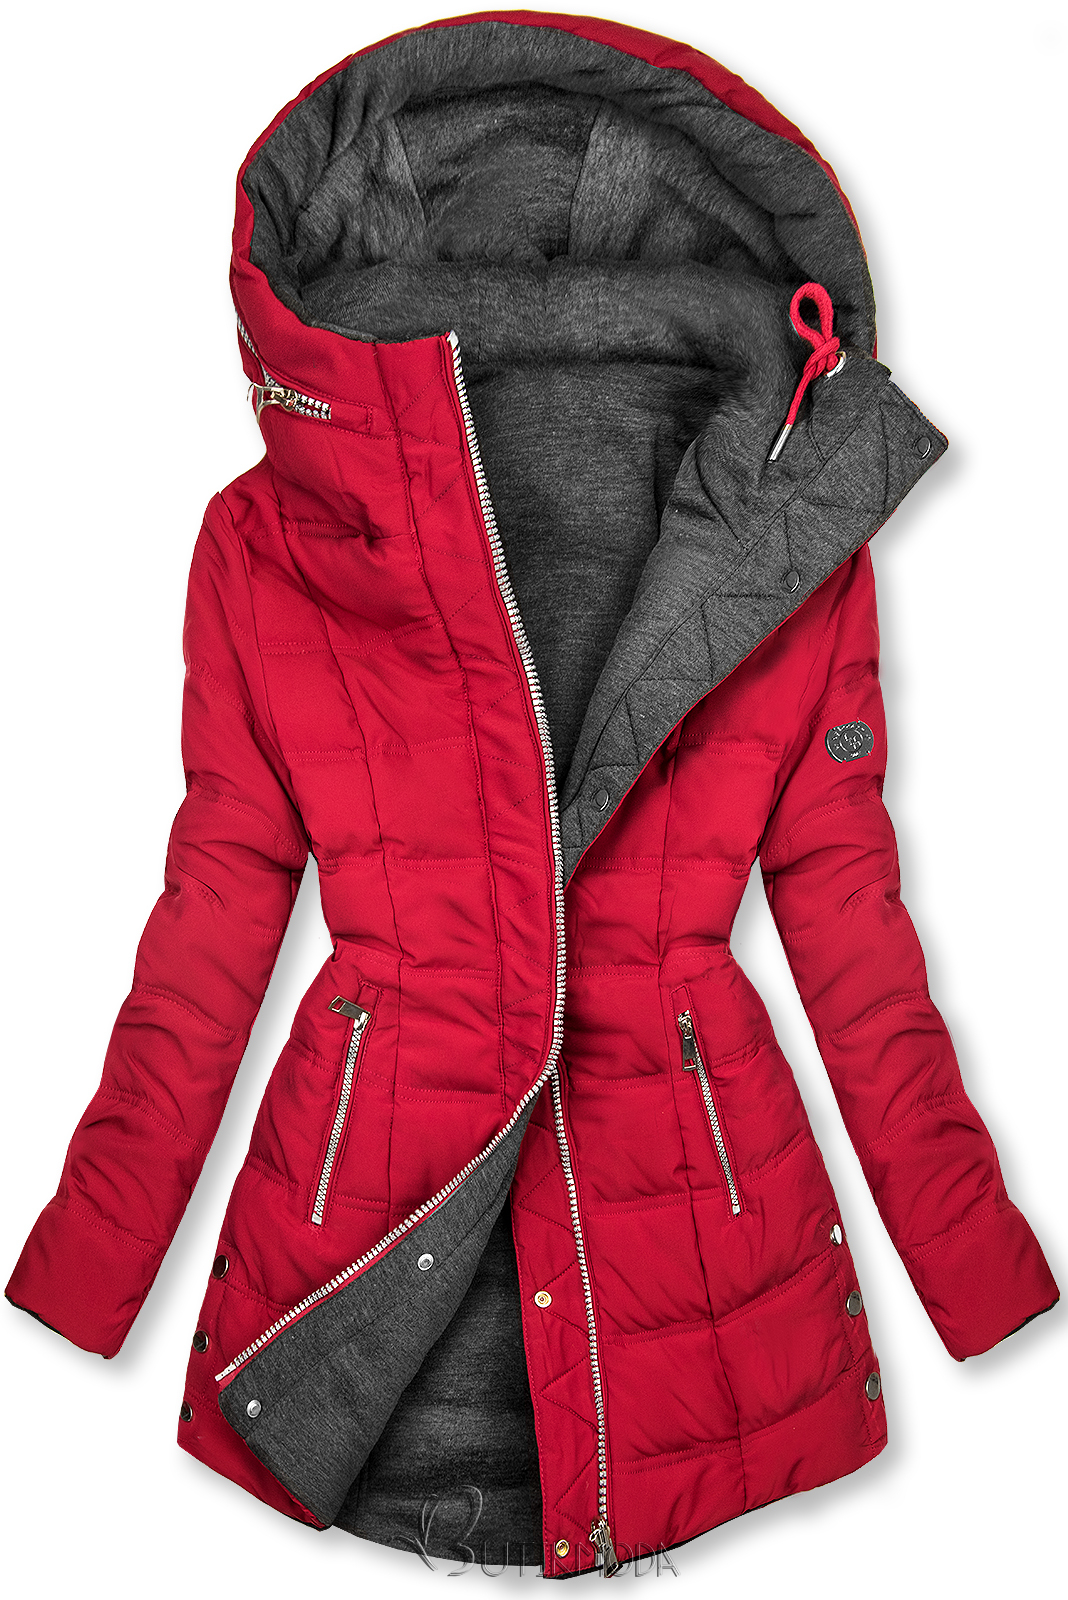 Borvörös és szürke színű kifordítható kabát sportos stílusban